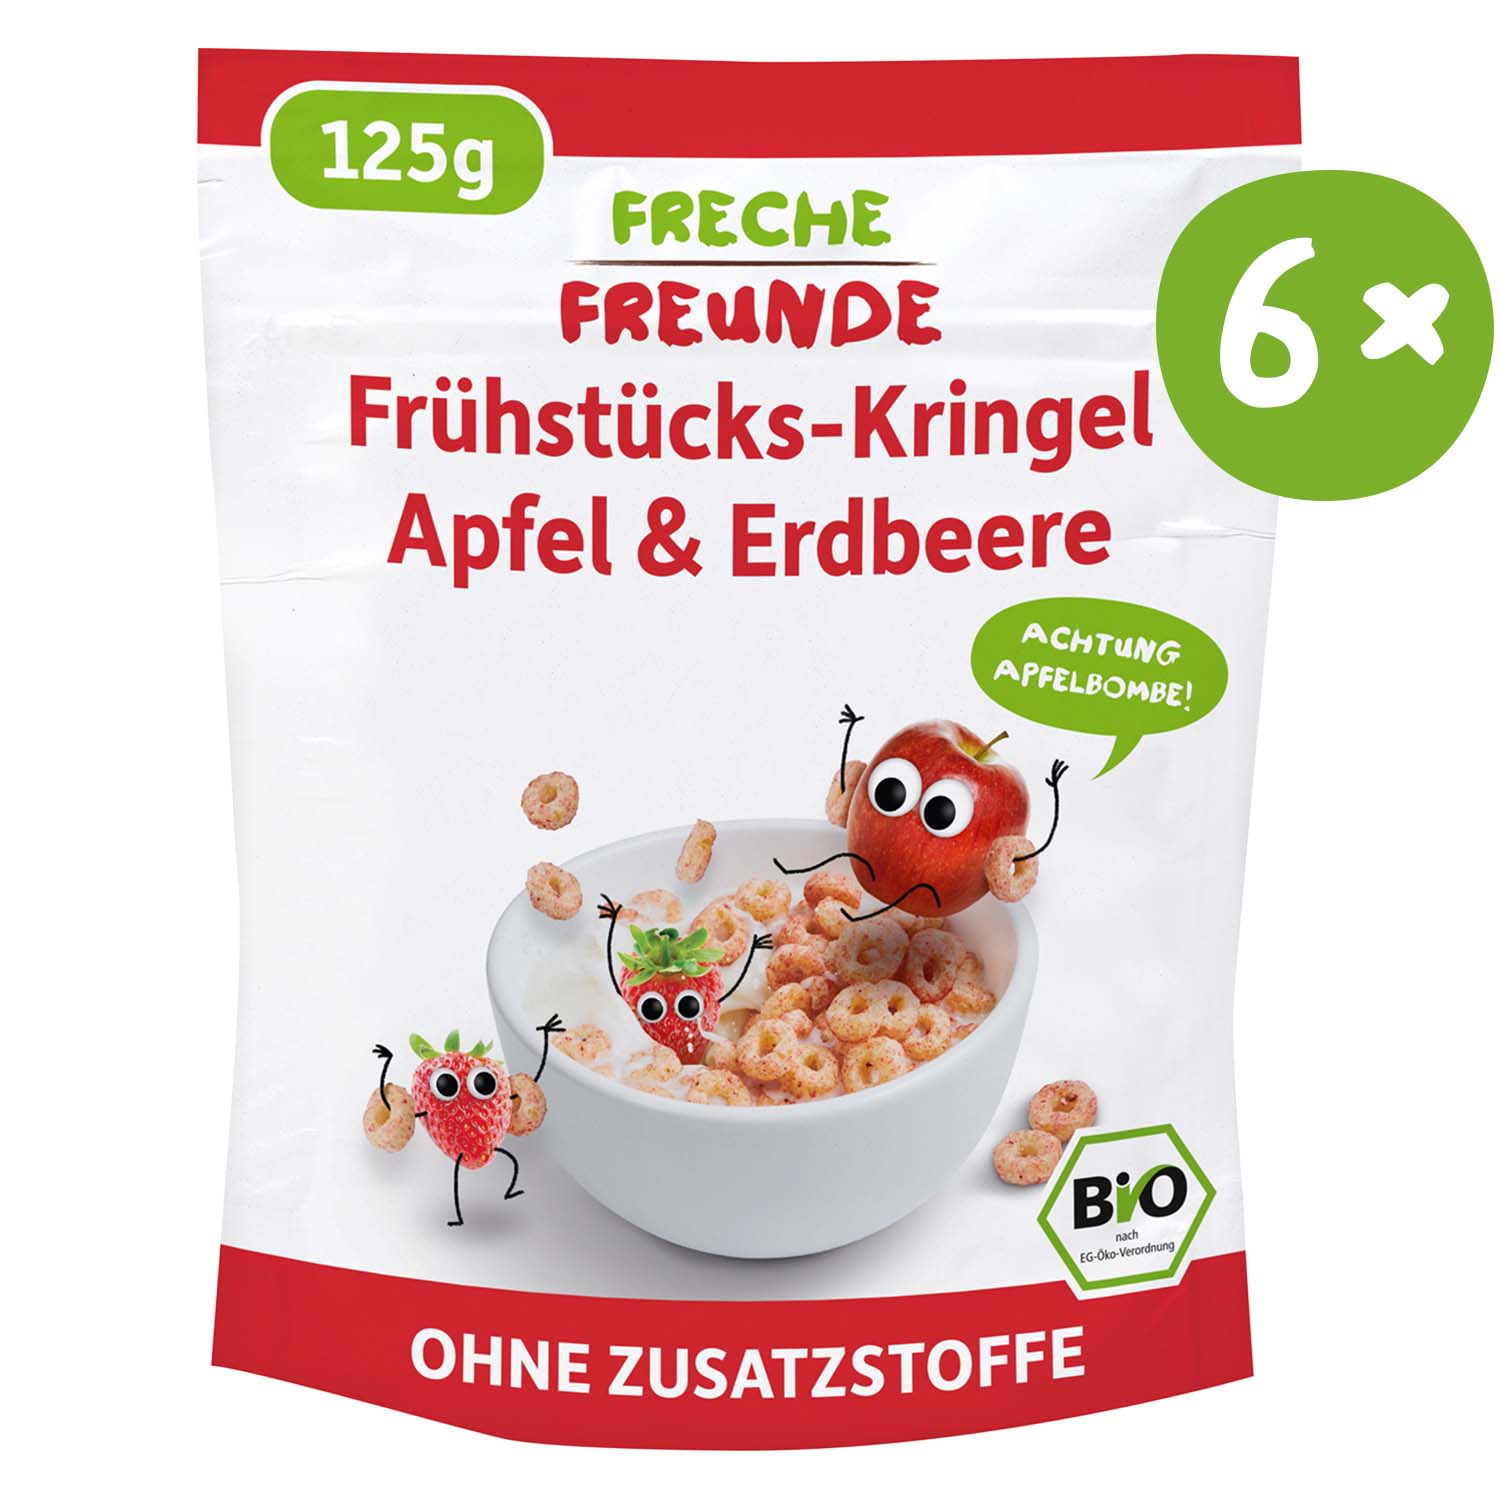 Frühstücks-Kringel Apfel & Erdbeere